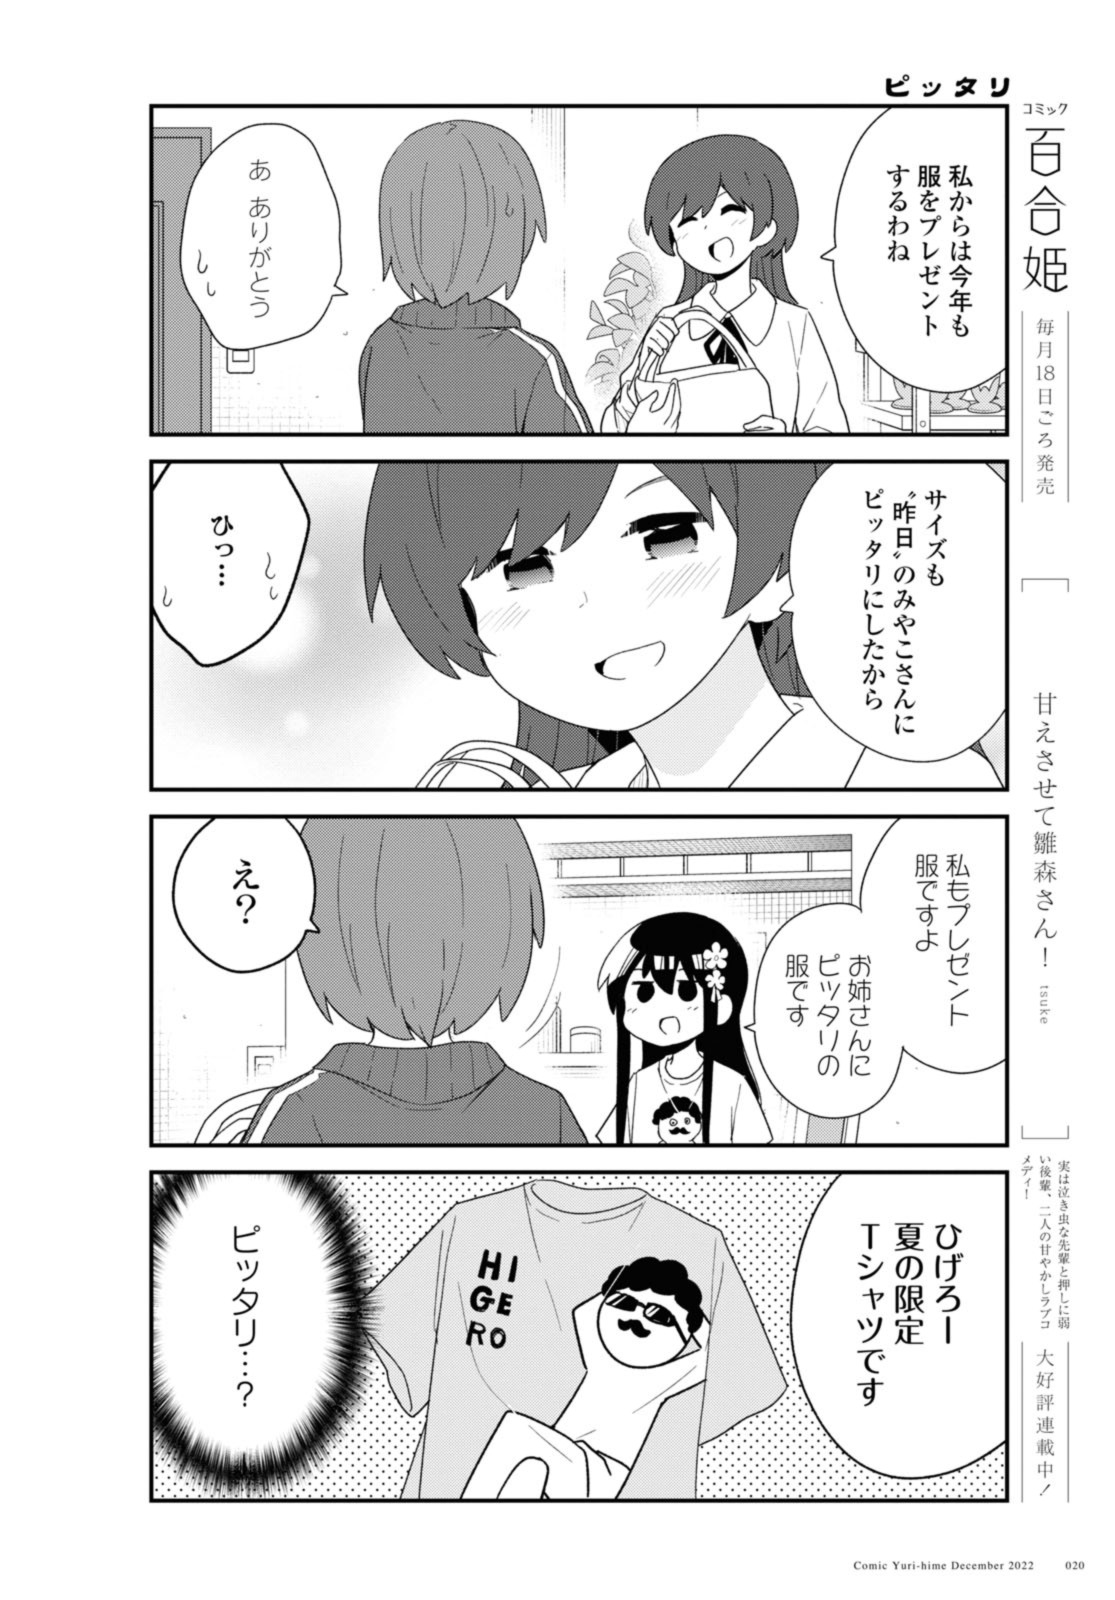 Watashi ni Tenshi ga Maiorita! - Chapter 100.2 - Page 2